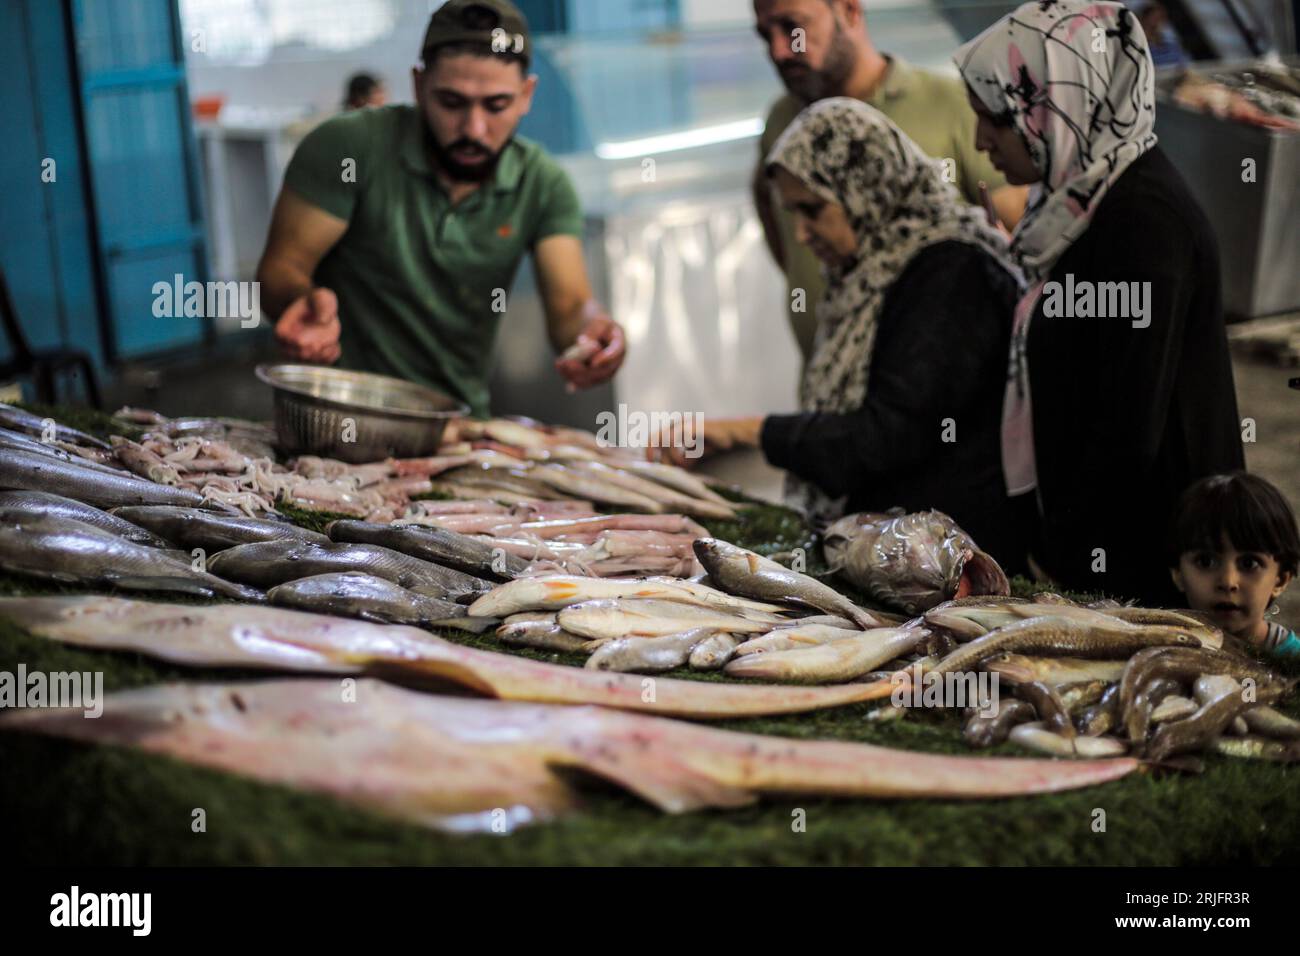 Los pescadores palestinos exhiben sus peces en el mercado central de pescado llamado 'al hesba' en la ciudad de Gaza después de regresar de un viaje de pesca desde el mar Mediterráneo, en la ciudad de Gaza. Los pescadores palestinos son objeto de violaciones diarias por parte de los barcos israelíes, y hoy ha sido una posición en solidaridad con los pescadores en el puerto de Gaza. Foto de stock